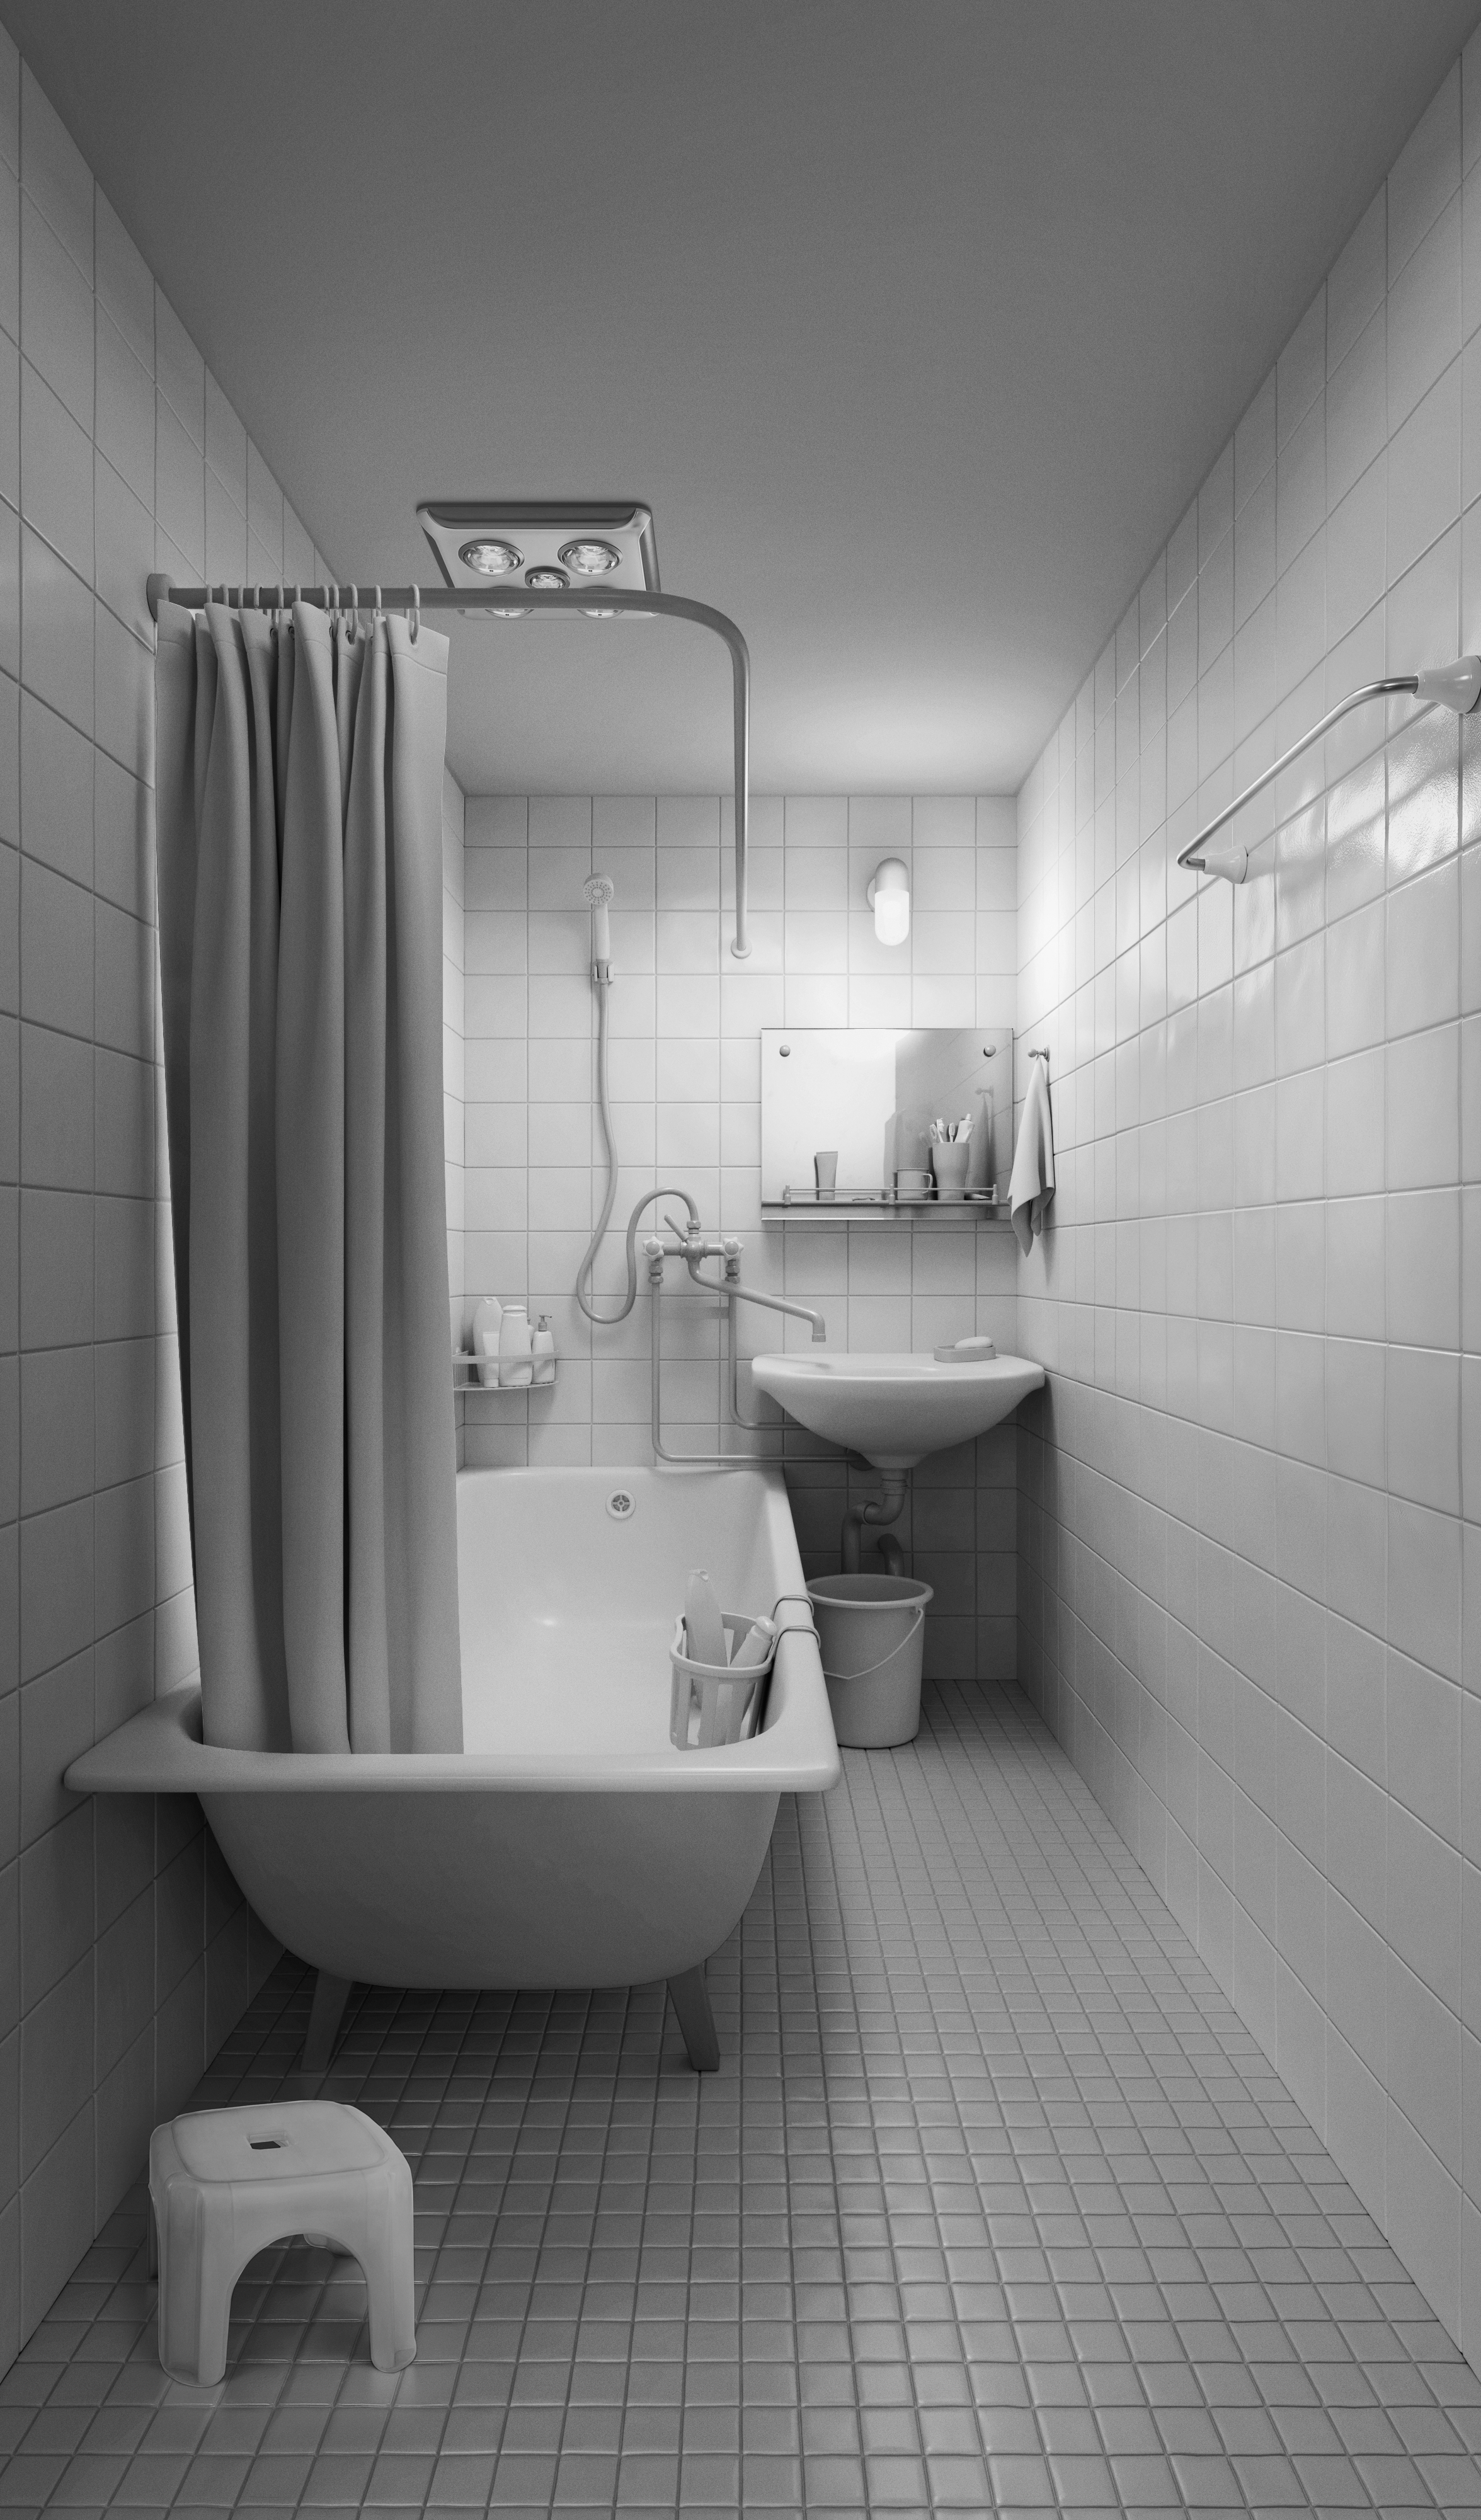 B_Bathroom_Model_Final_RGB.jpg